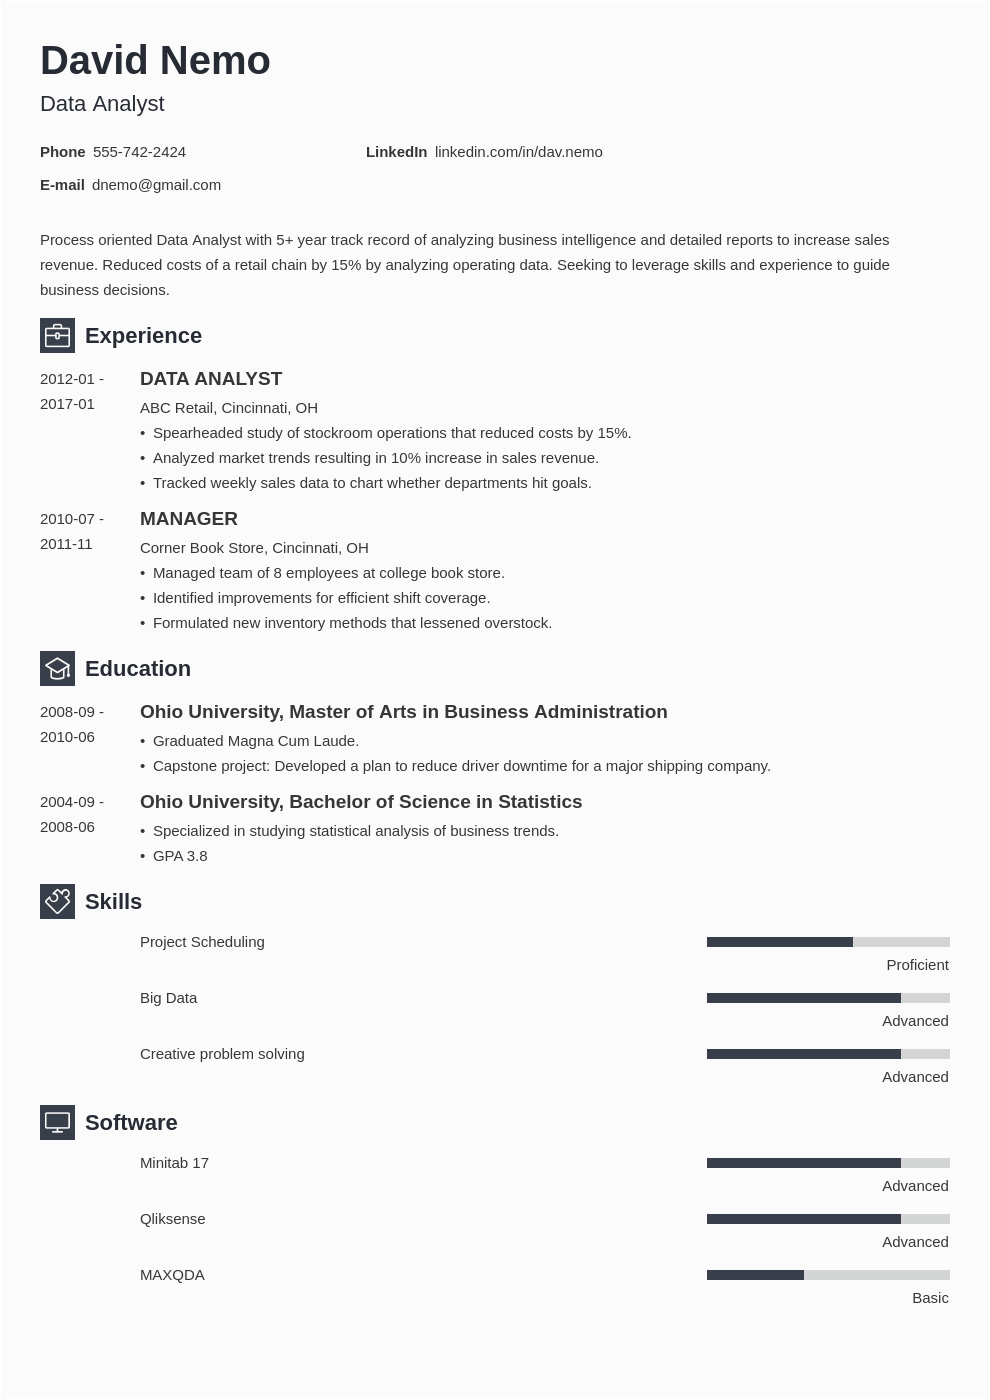 Sample Resume for Data Analyst Freshers Resume for Data Analyst Fresher